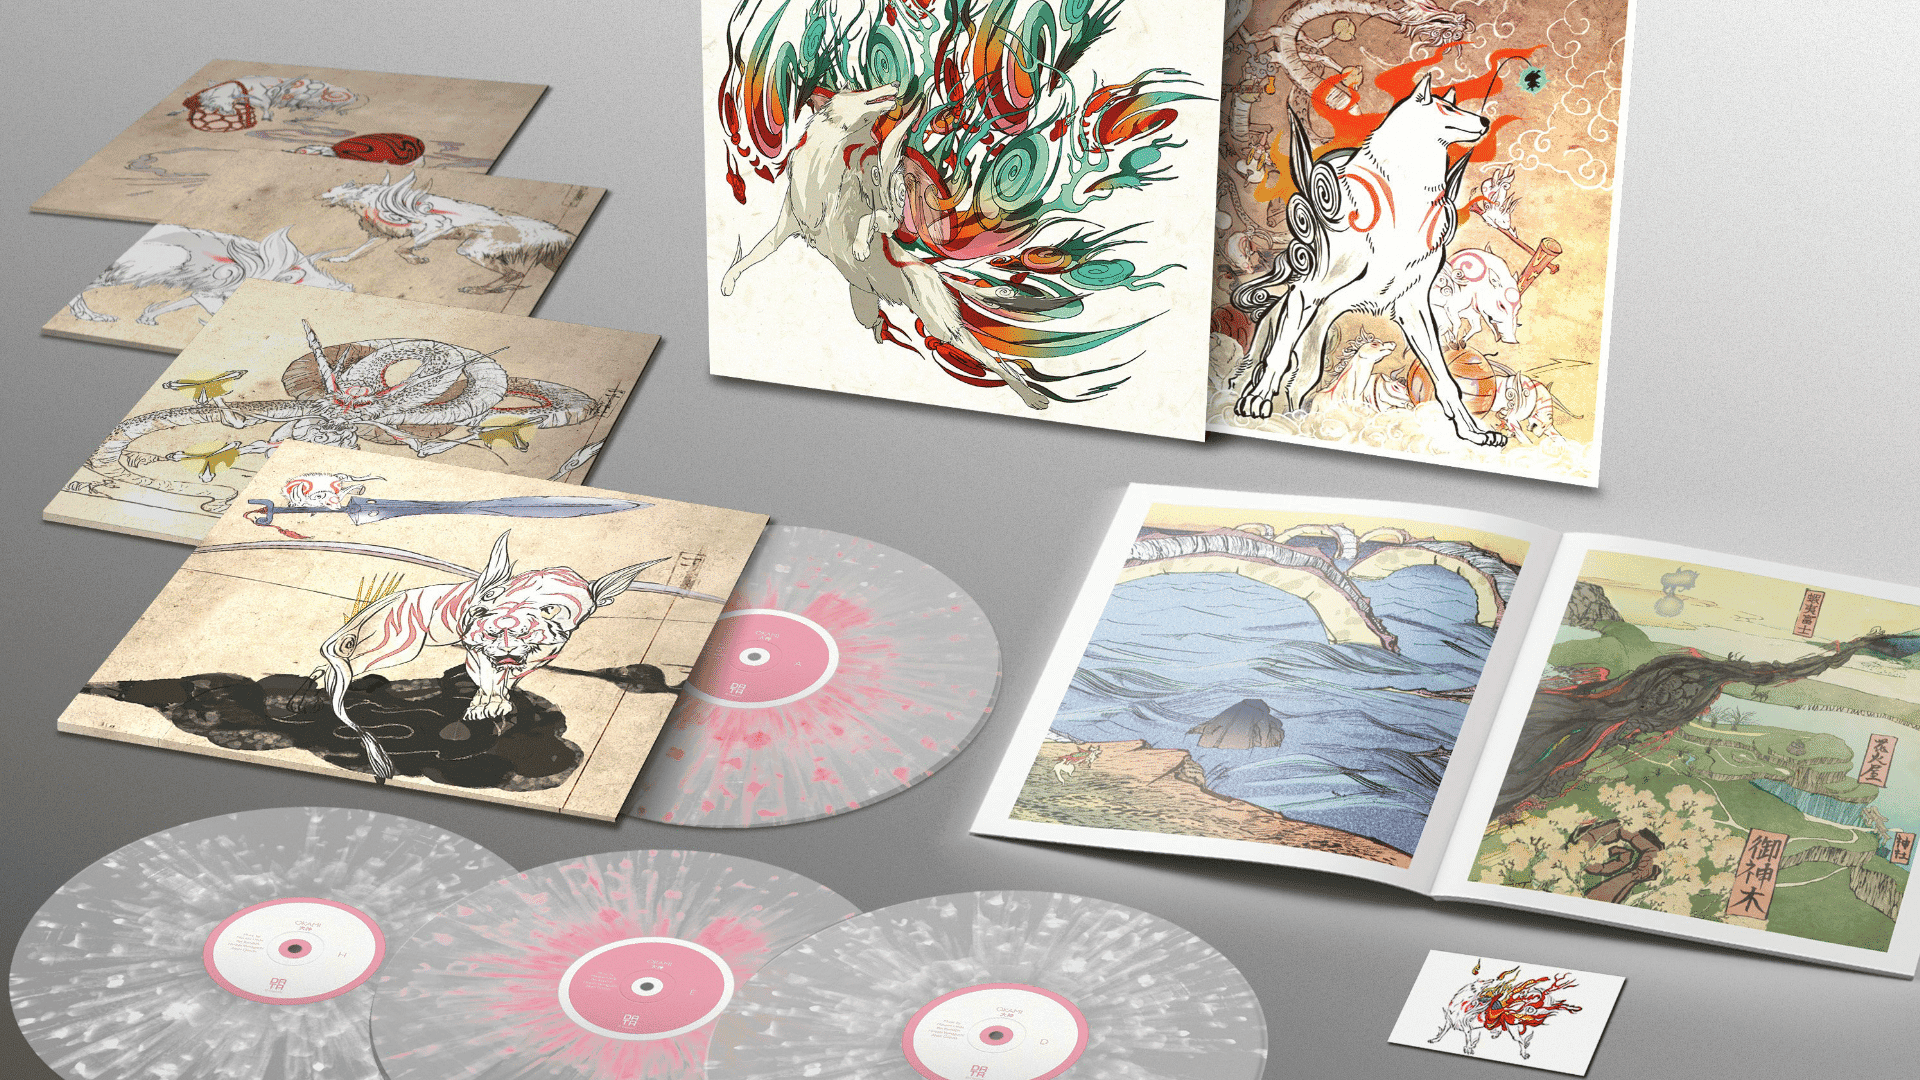 Nueva edición especial de Okami: Libros de arte, discos de vinilo y más